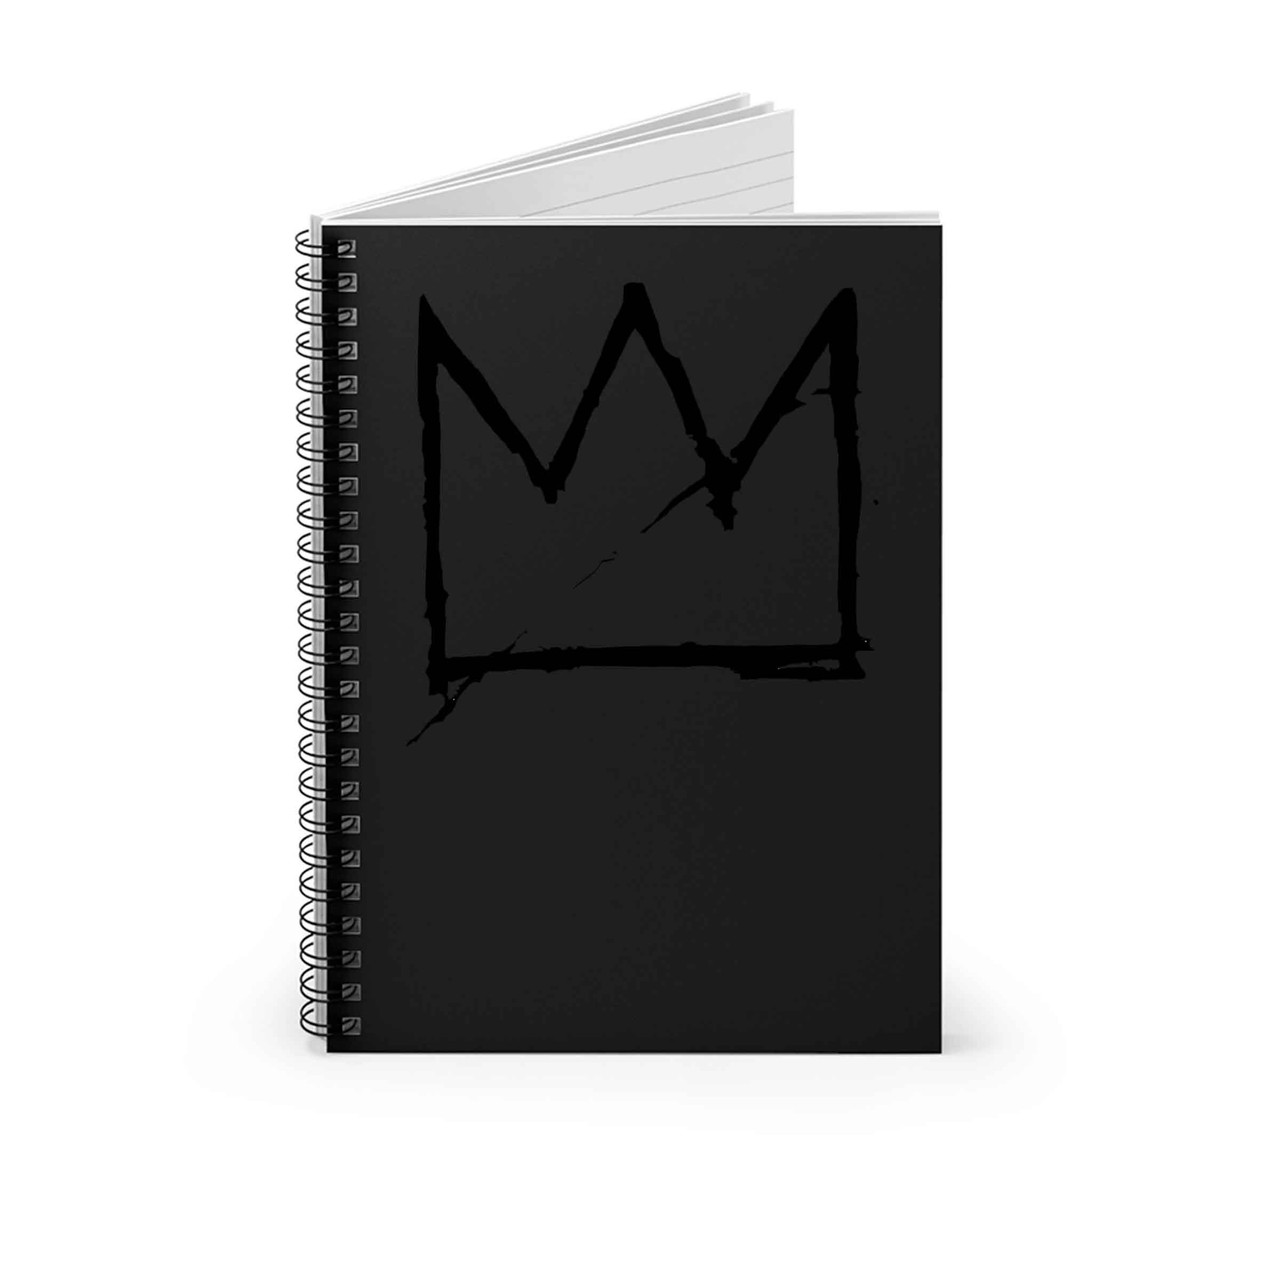 Basquiat Crown Sticker - SFMOMA Museum Store